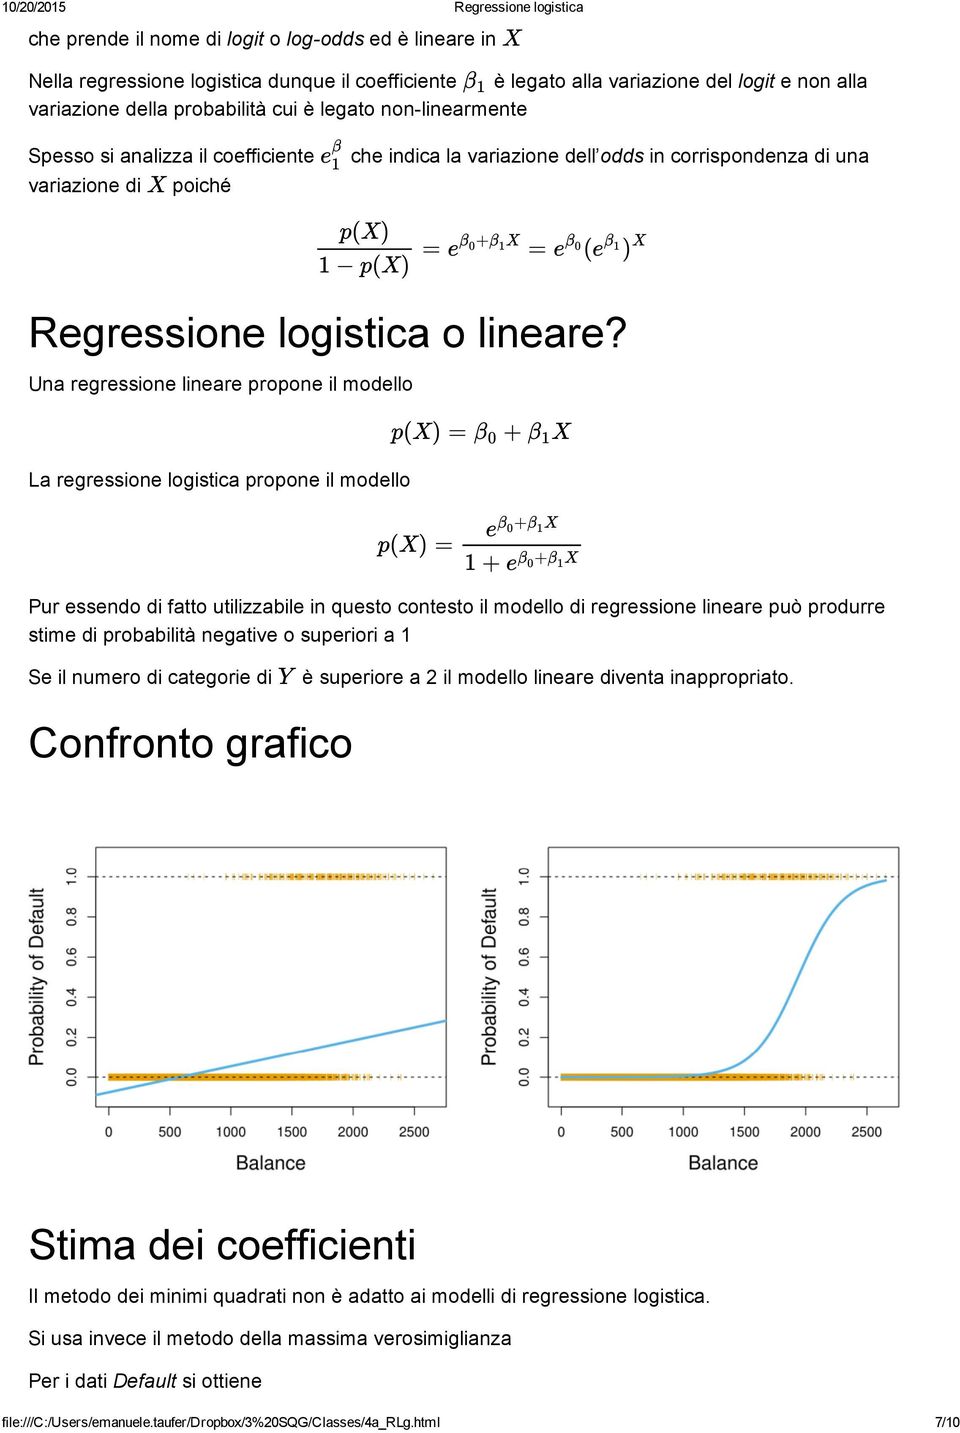 Una regressione lineare propone il modello La regressione logistica propone il modello = e + X = ( β 0 β 1 e β 0 e β 1 ) X p(x) = + X β 0 β 1 p(x) = e β 0 + β 1 X 1 + e β 0 + β 1 X Pur essendo di